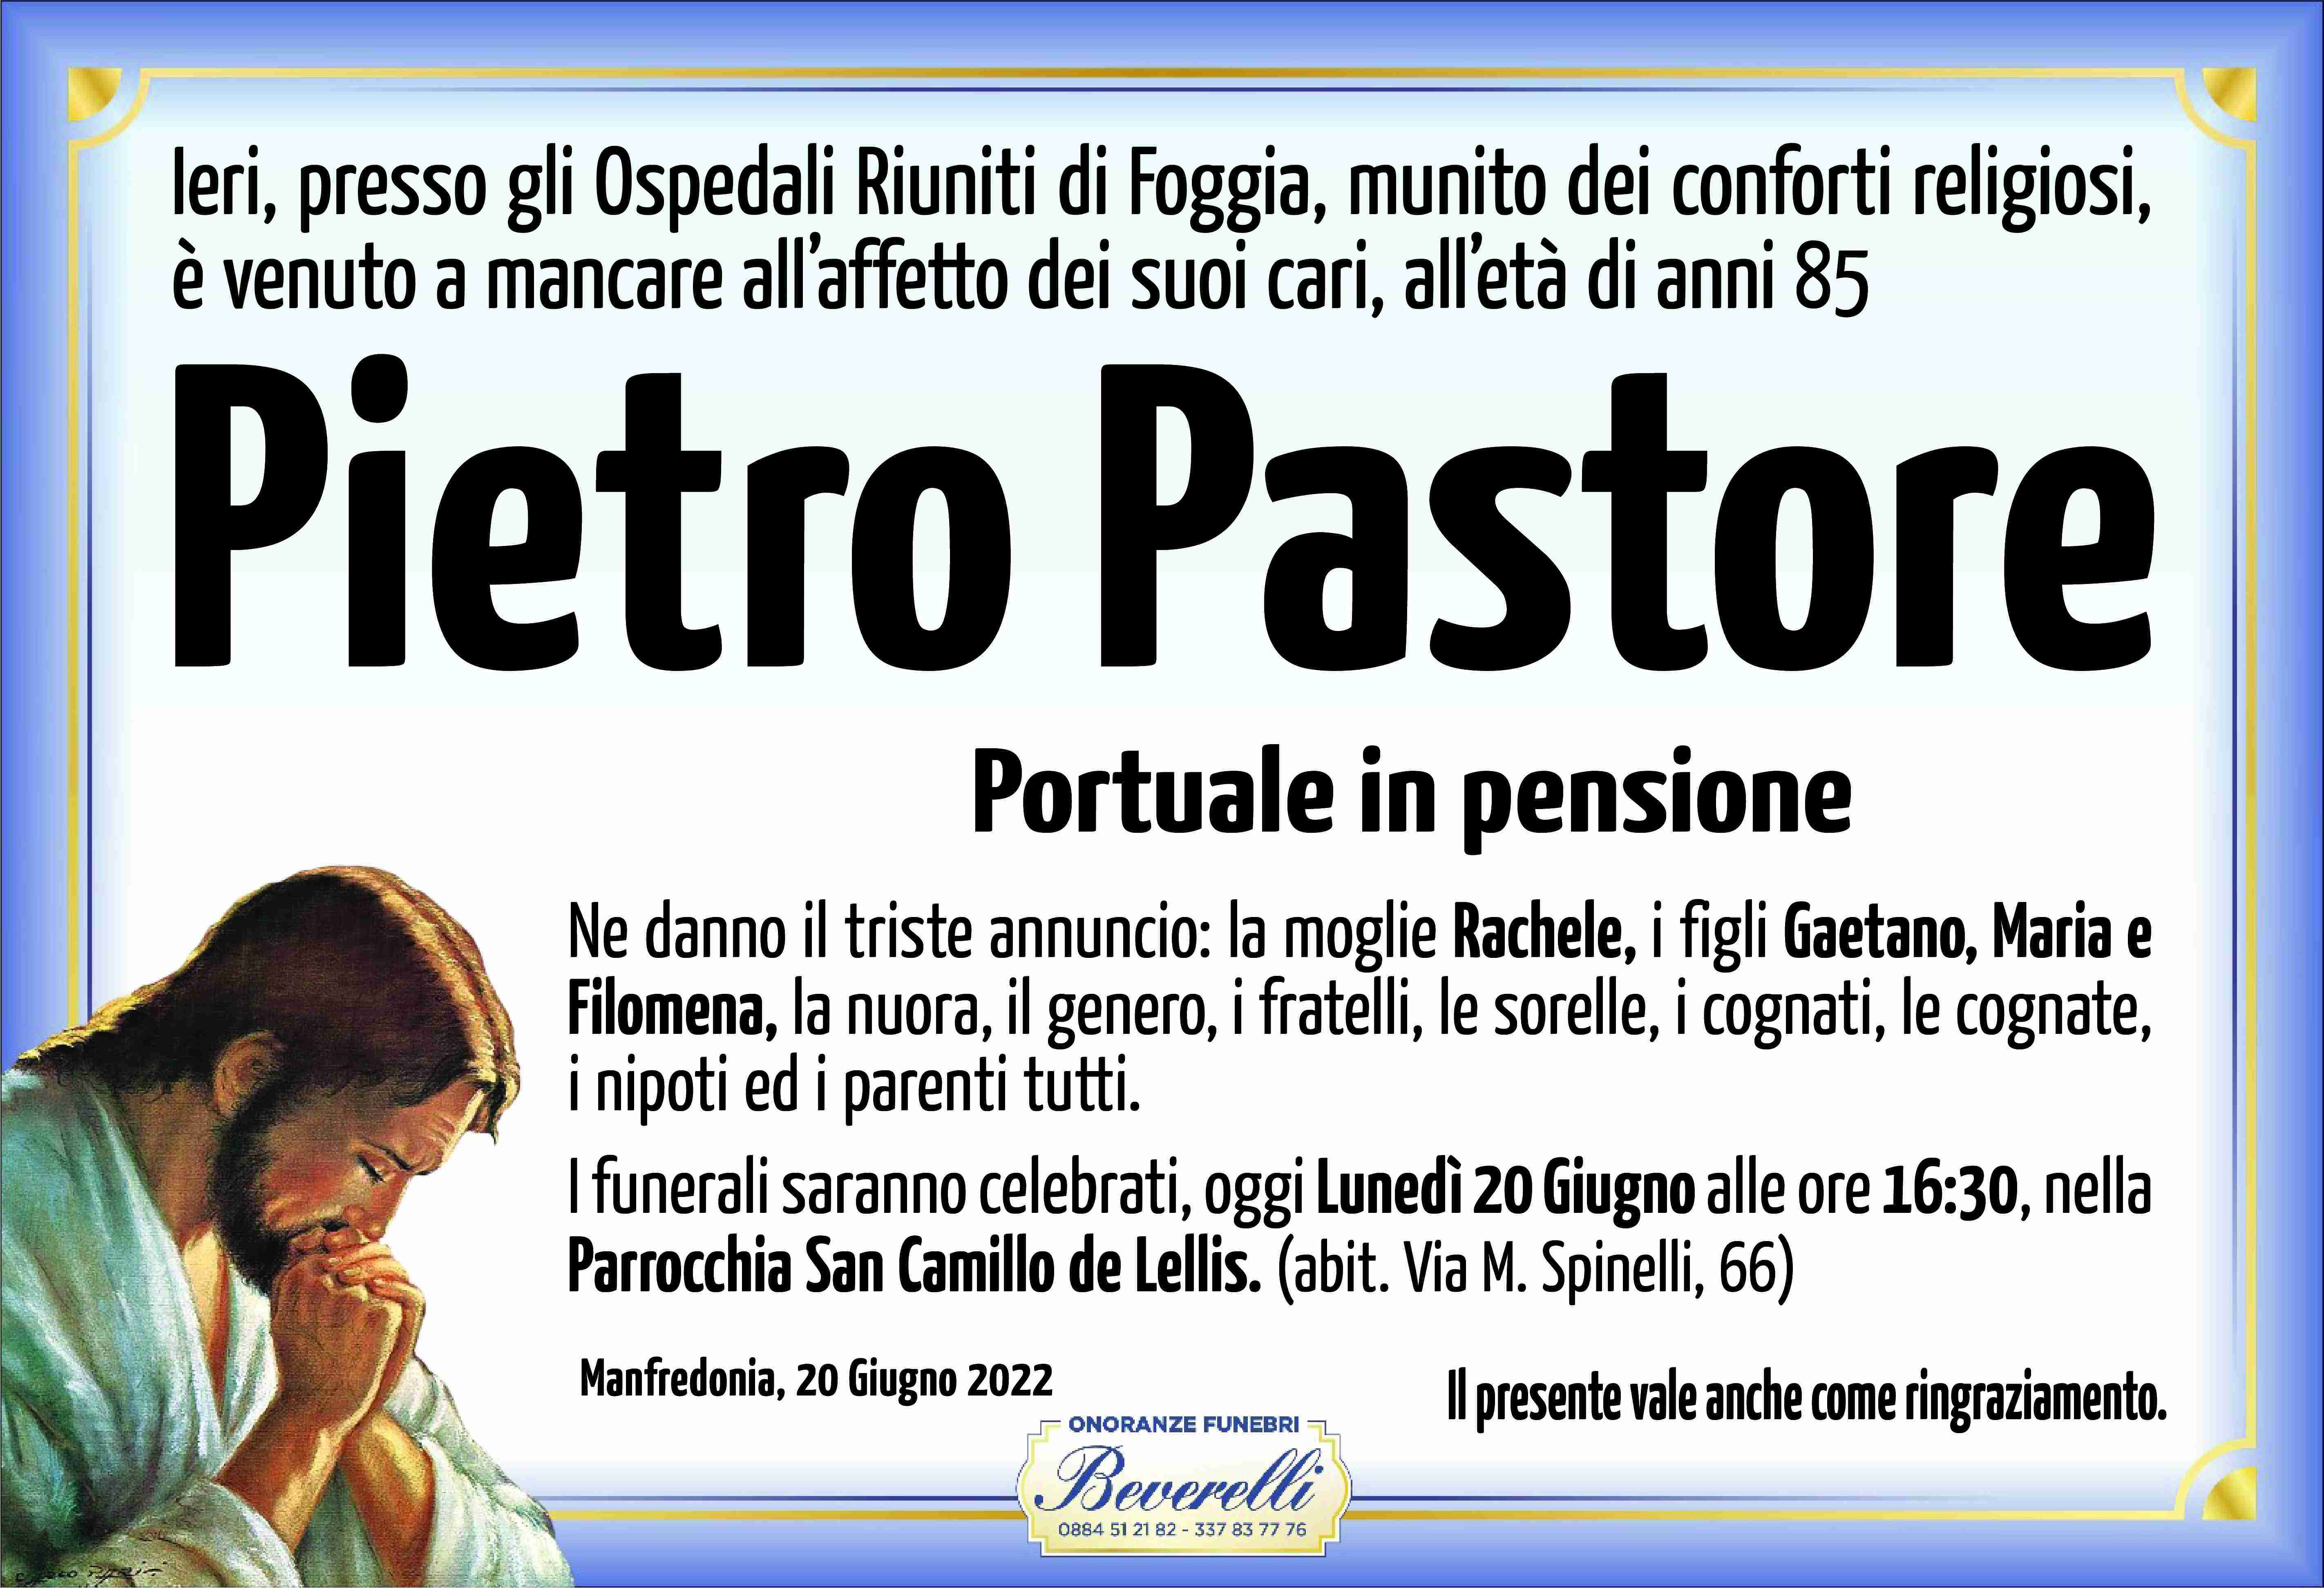 Pietro Pastore